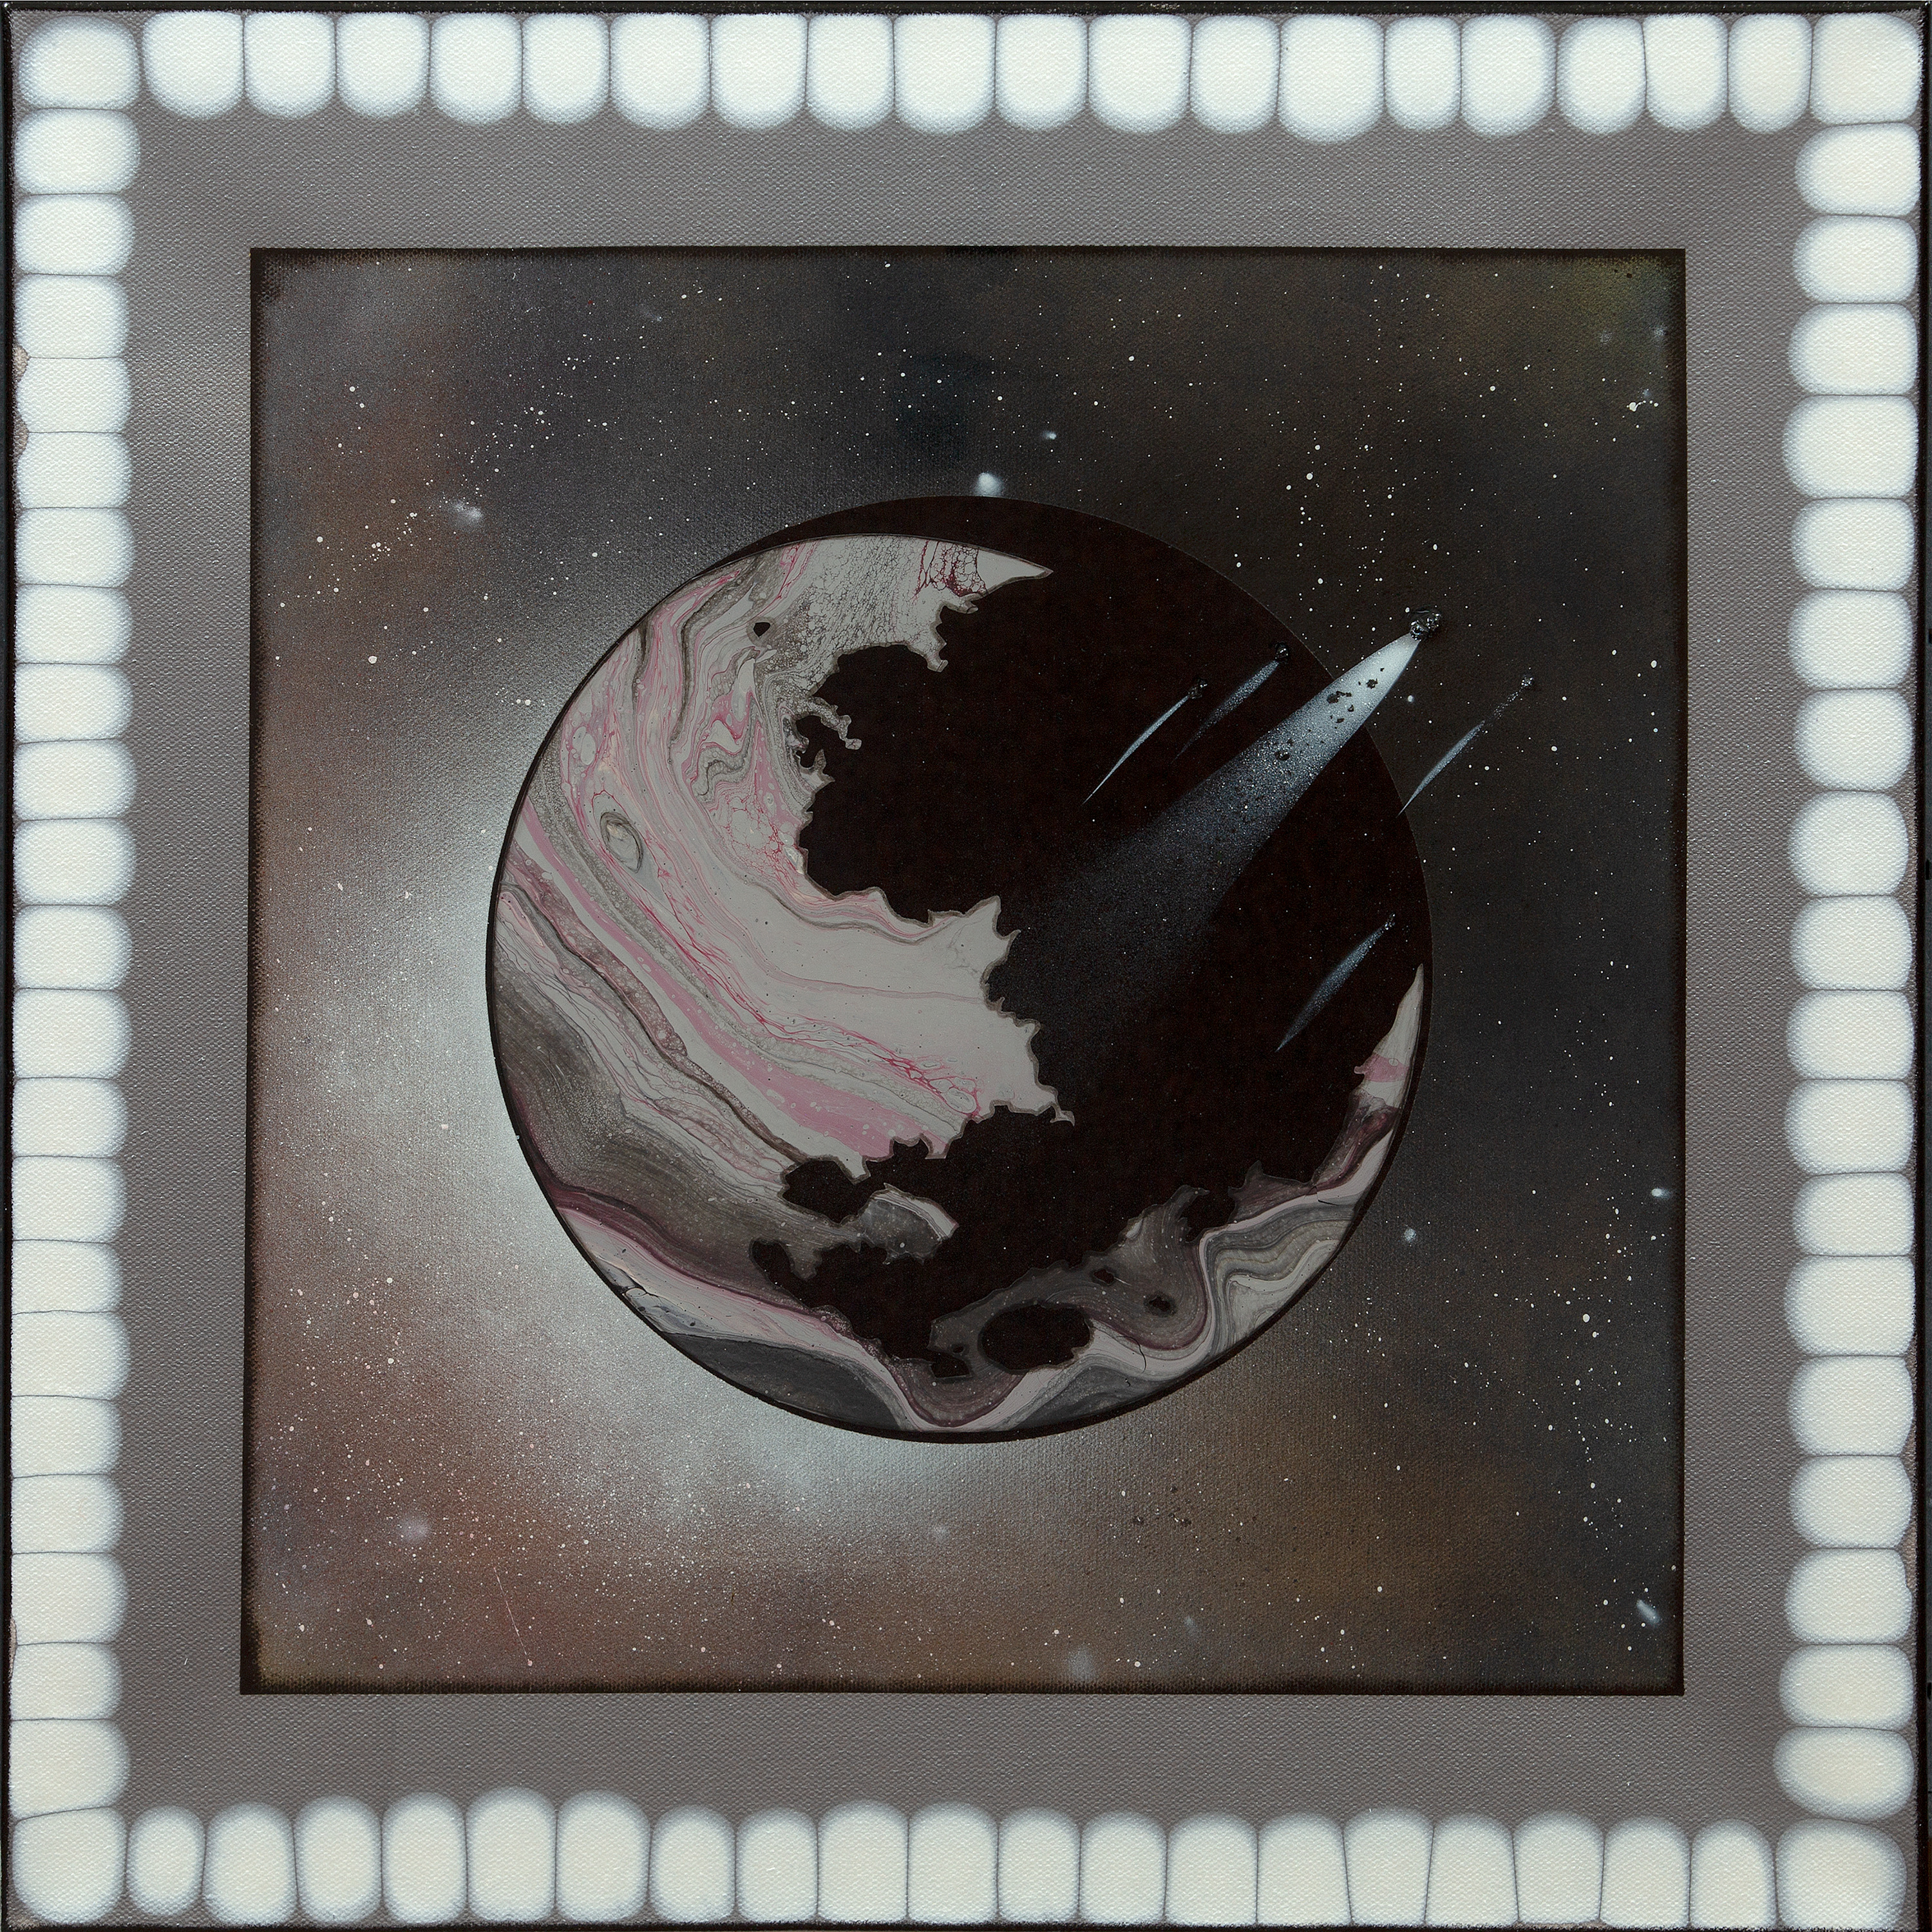 Am21p 015 grey planet series 1.jpg wawgx4